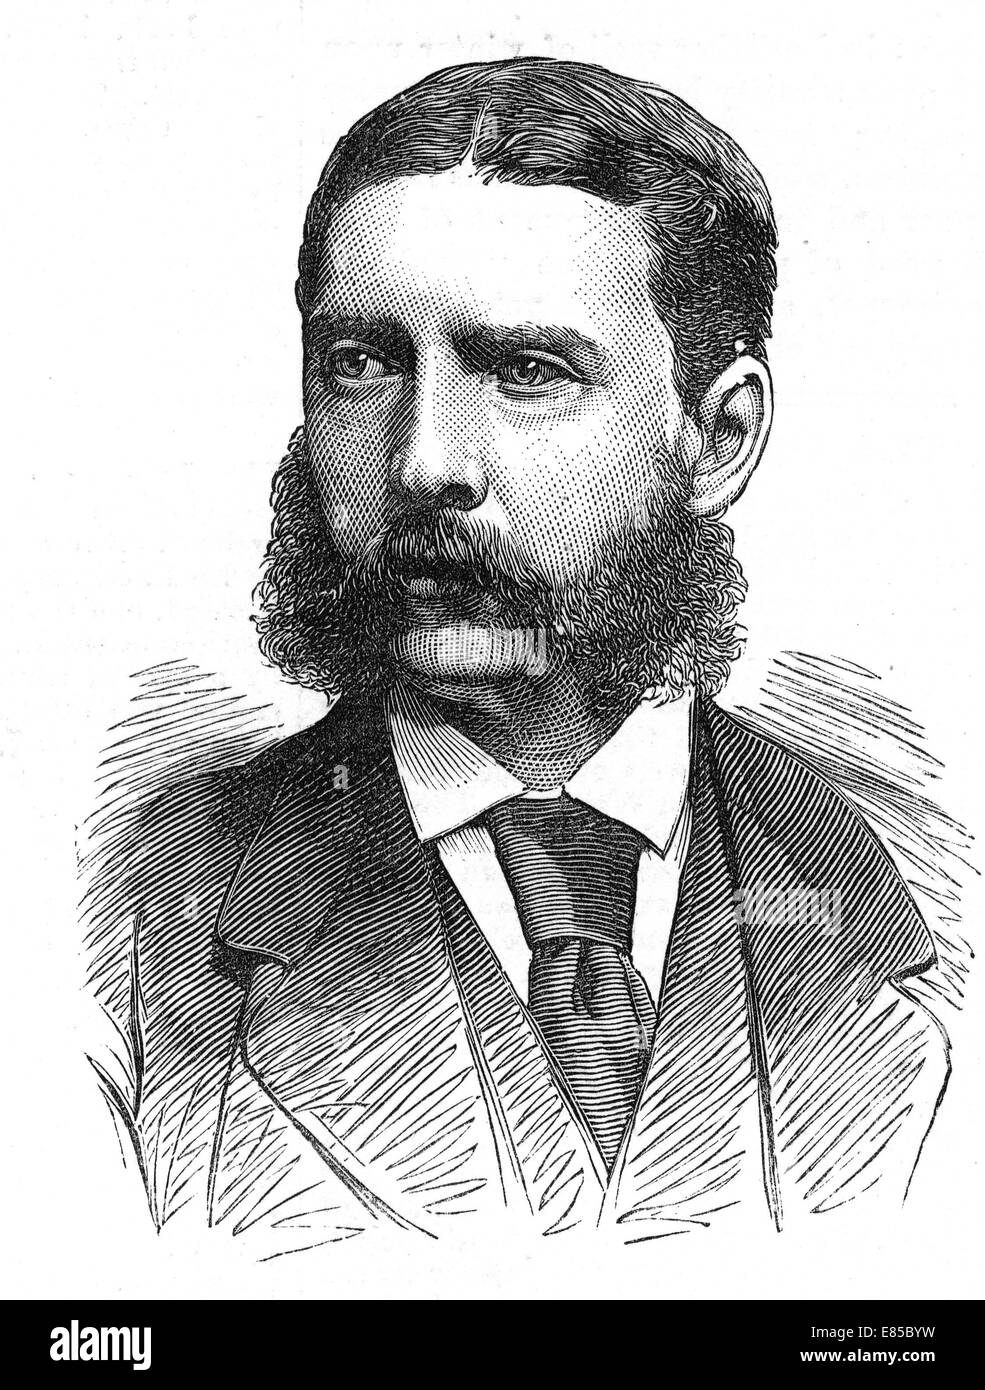 GONVILLE BROMHEAD VC (1845-1891) ufficiale dell'Esercito britannico premiato il VC per la sua parte nella difesa di Rorke's deriva nel 1879 Foto Stock